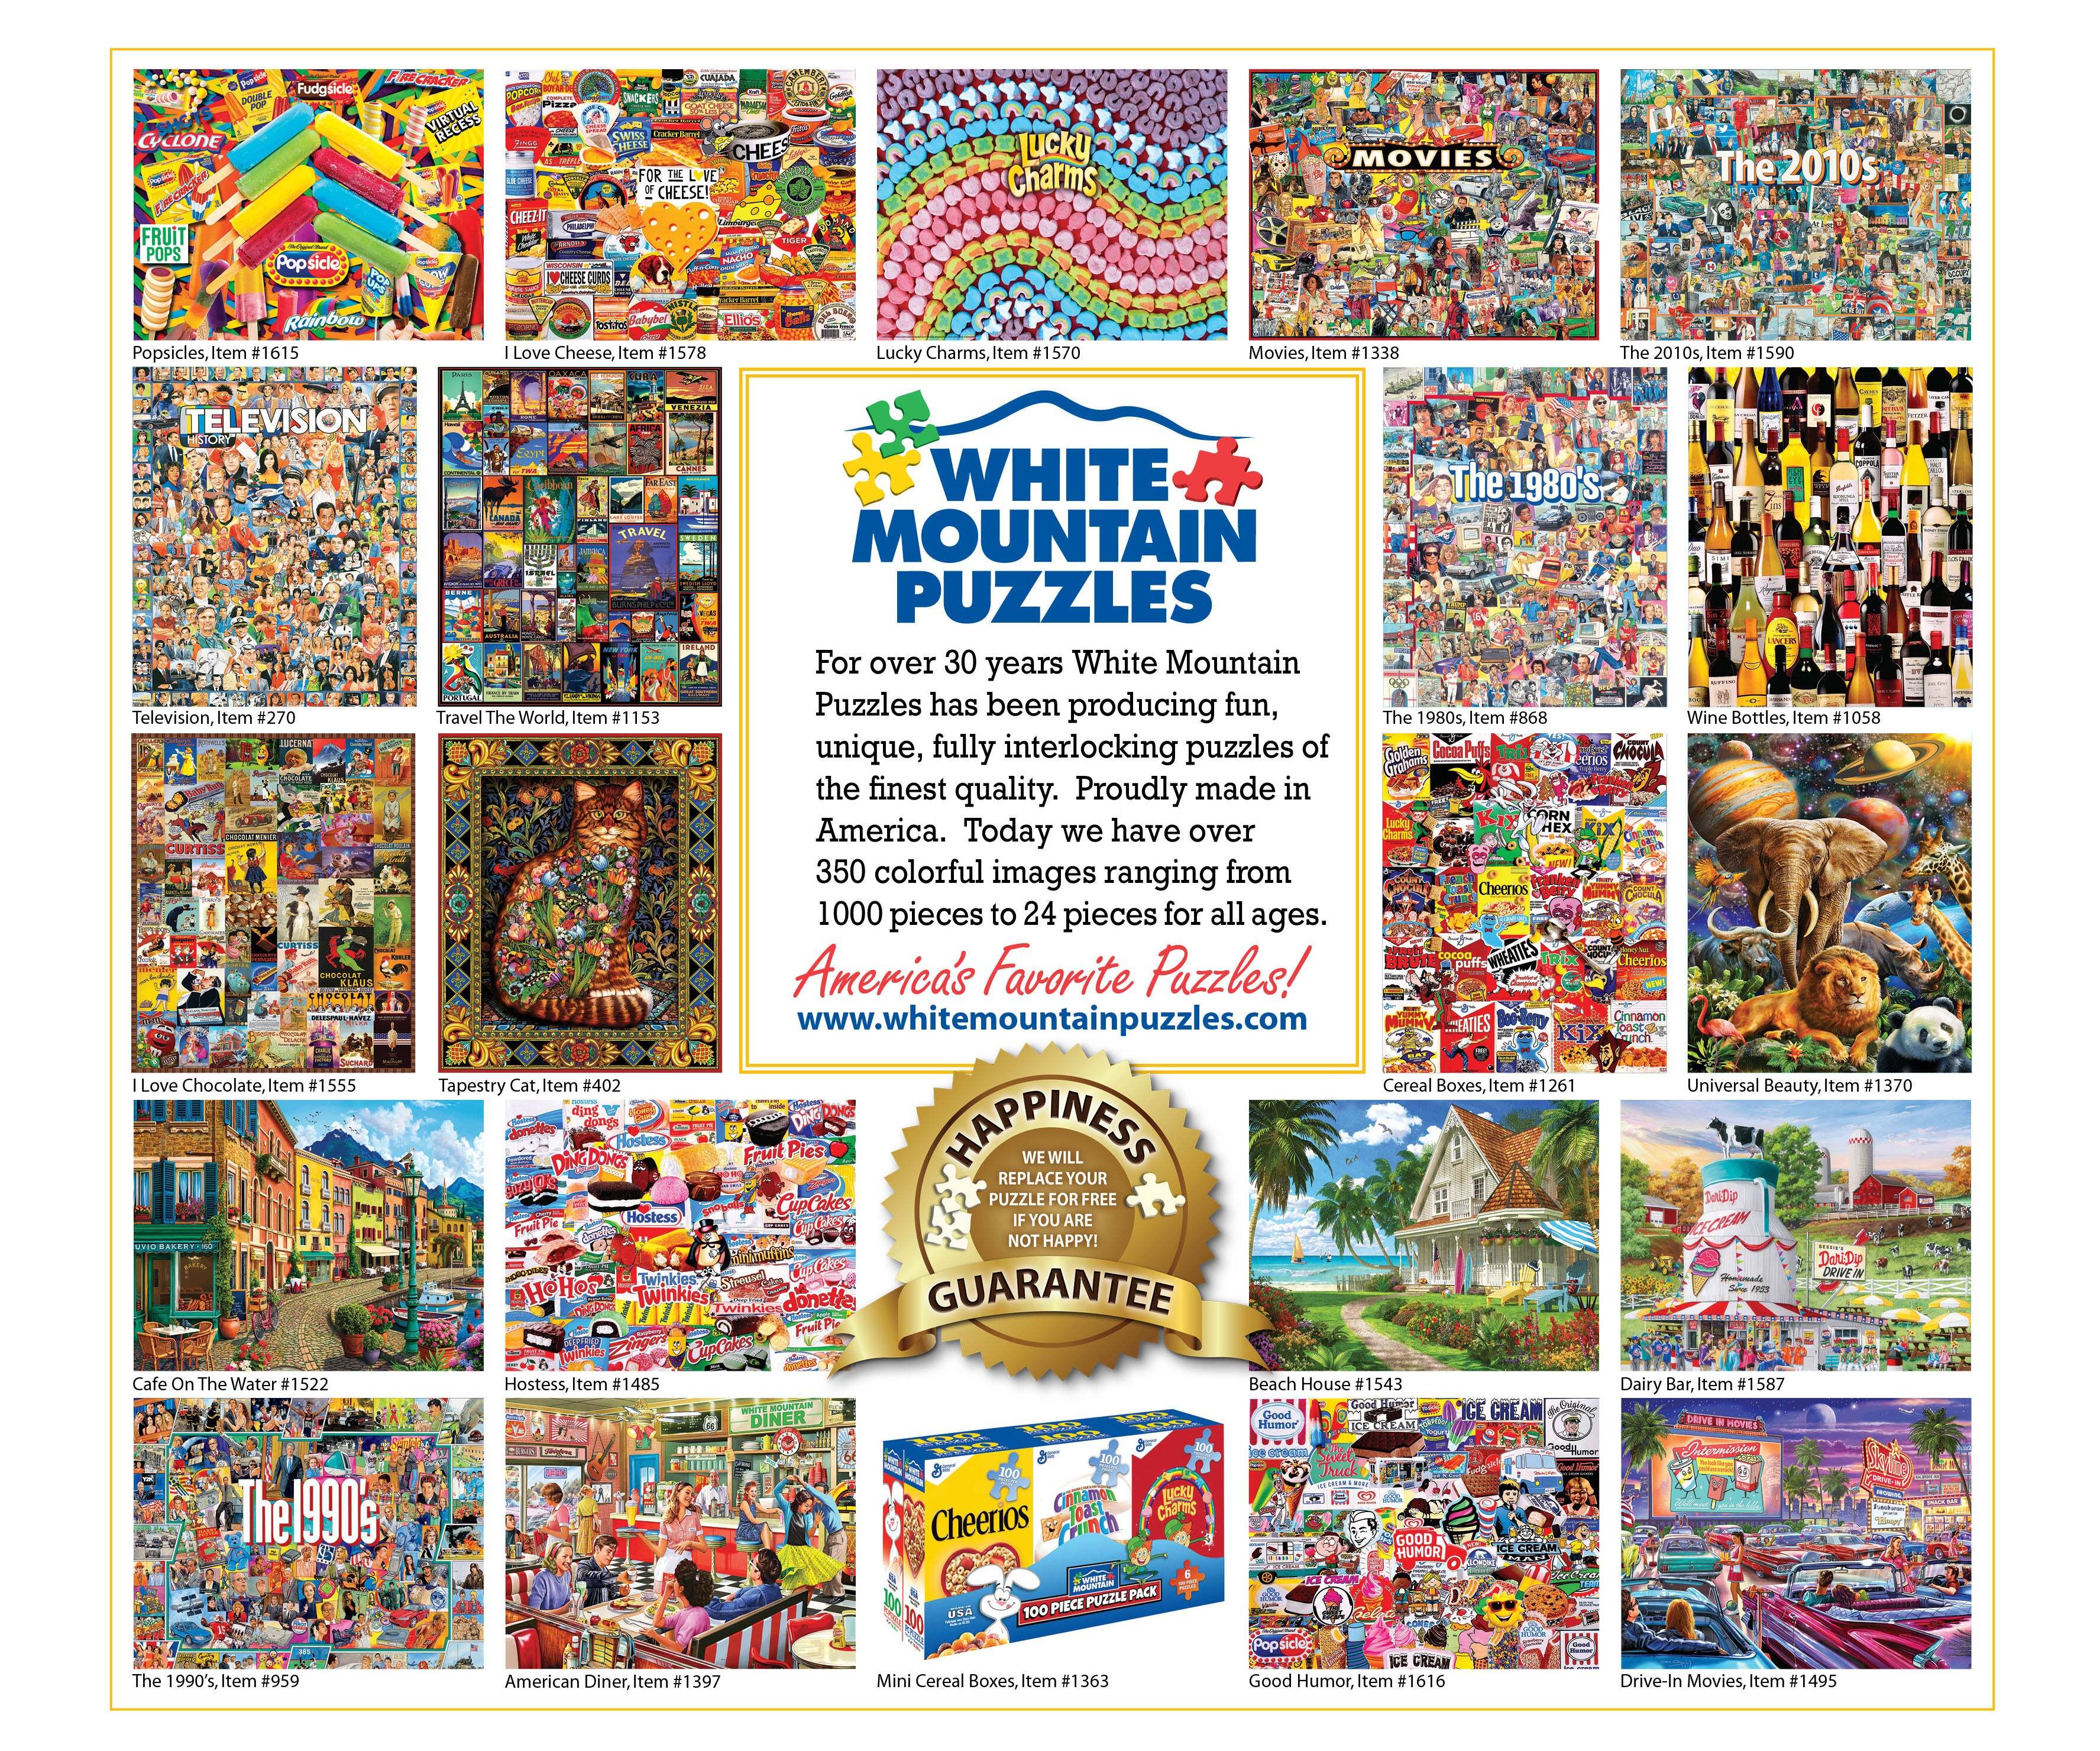 I Love New England (1144pz) - 1000 Piece Jigsaw Puzzle